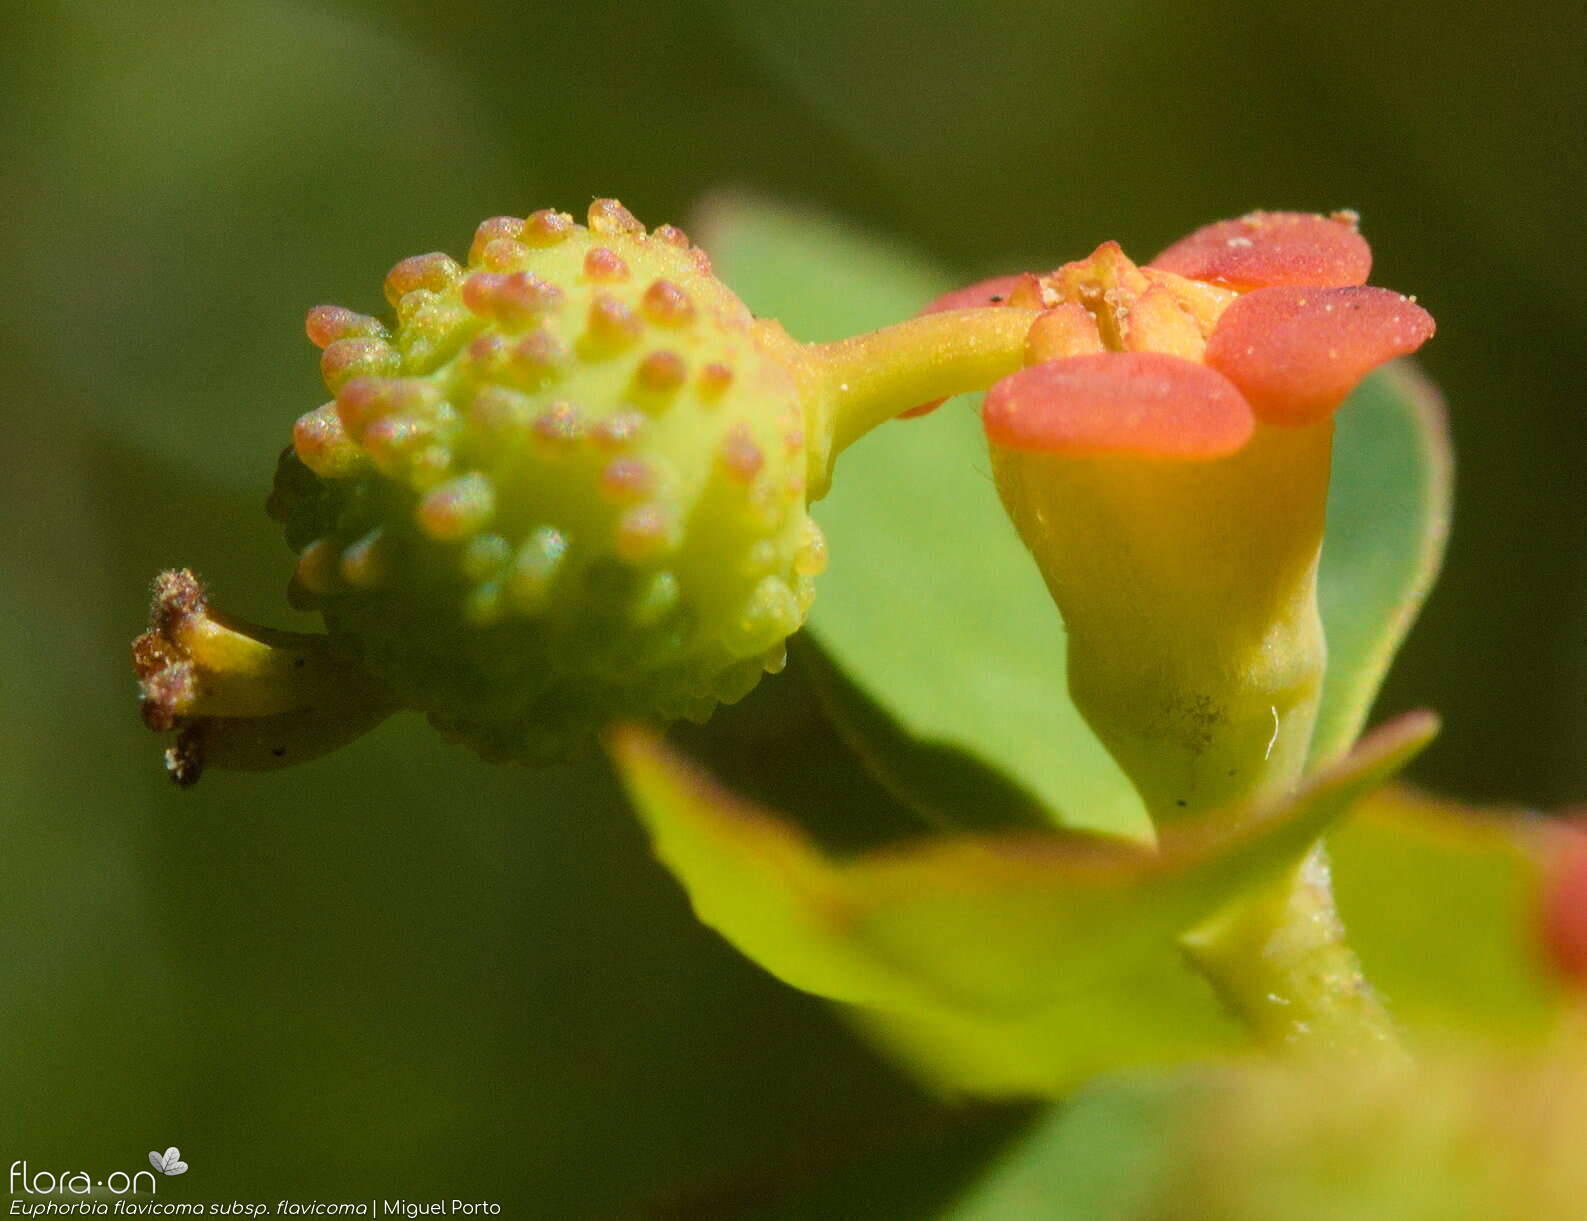 Euphorbia flavicoma flavicoma - Fruto | Miguel Porto; CC BY-NC 4.0